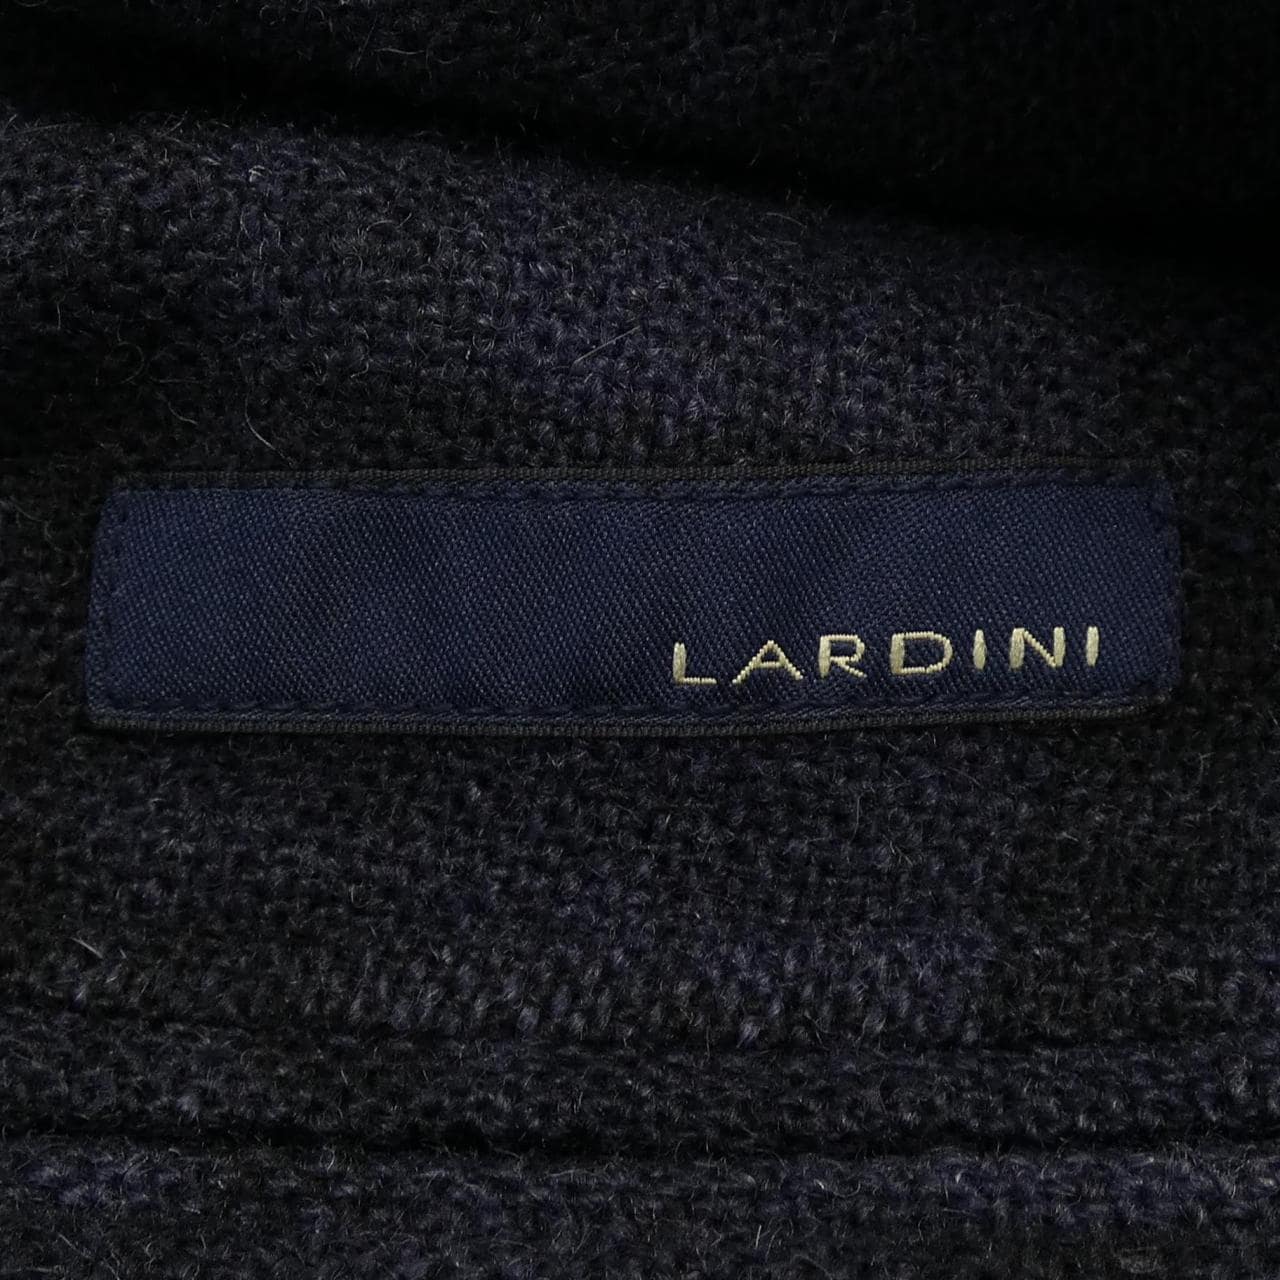 ラルディーニ LARDINI テーラードジャケット